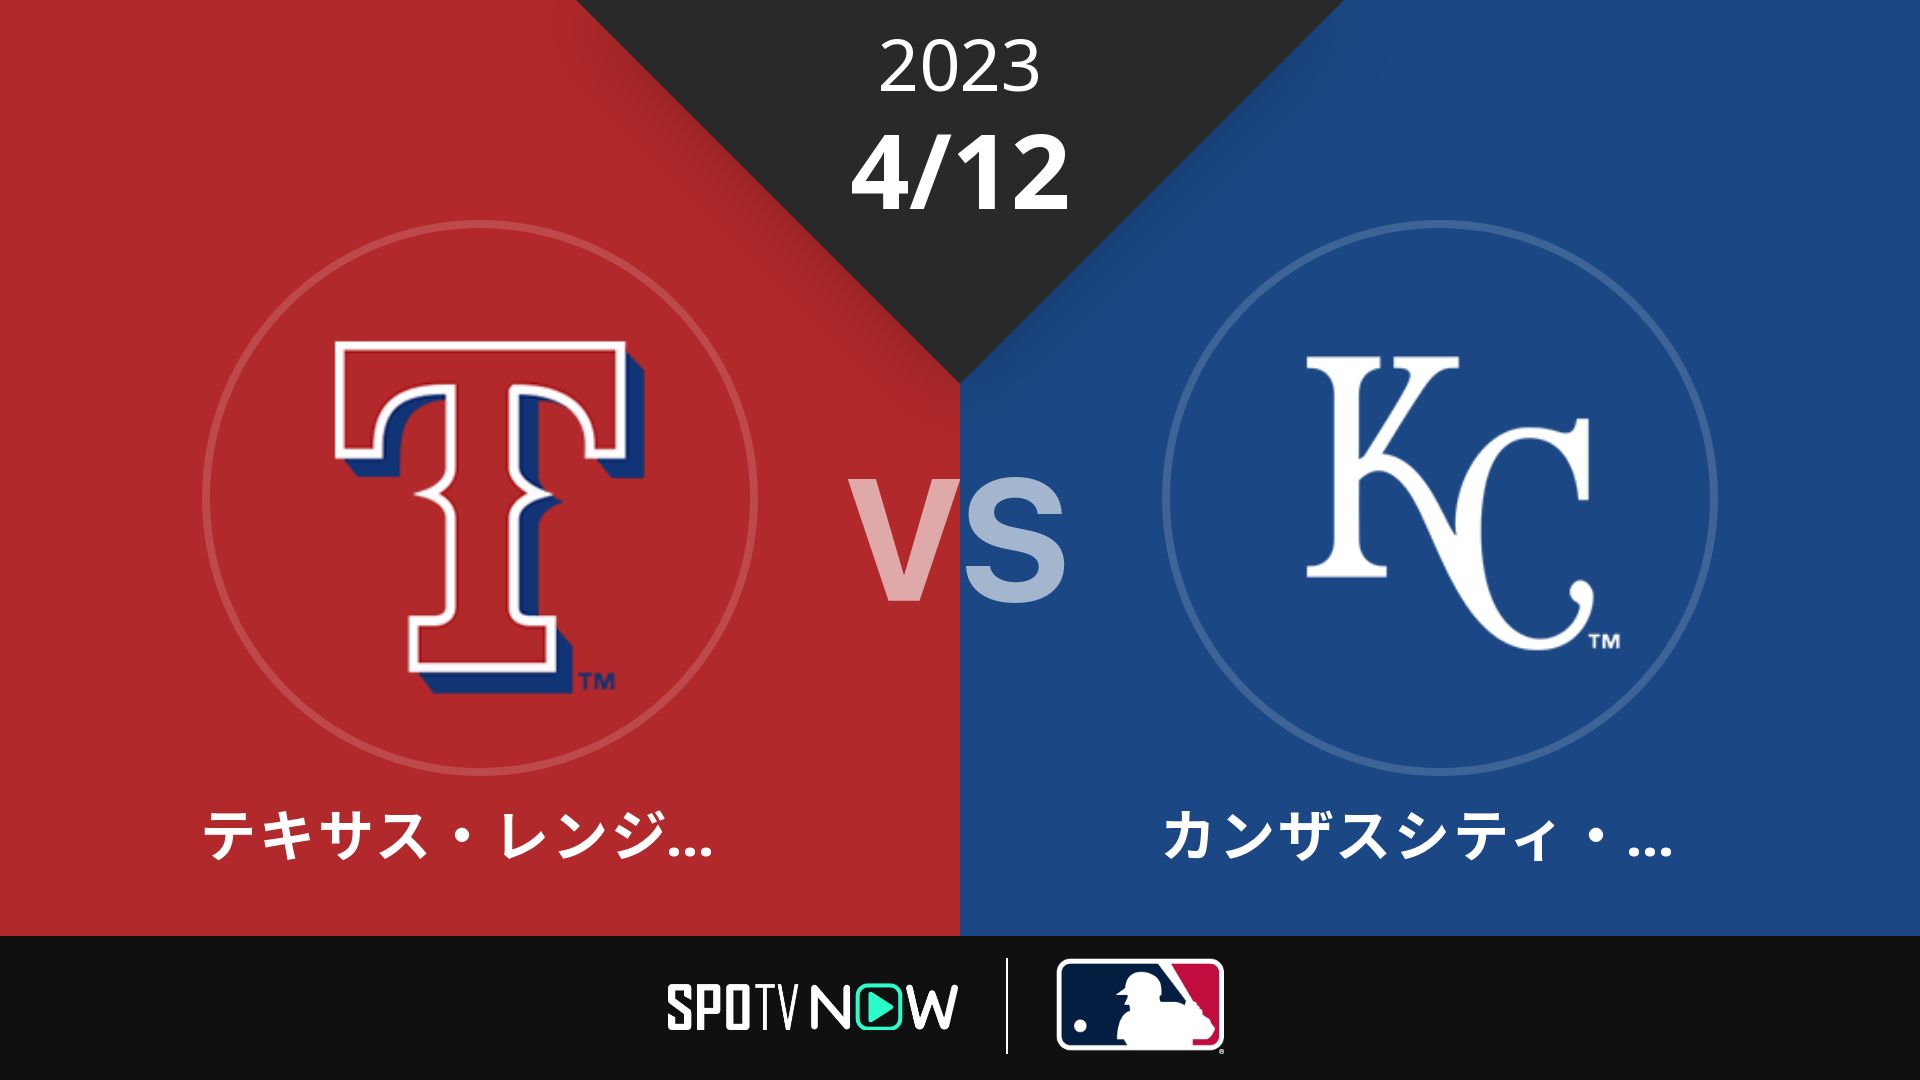 2023/4/12 レンジャーズ vs ロイヤルズ [MLB]